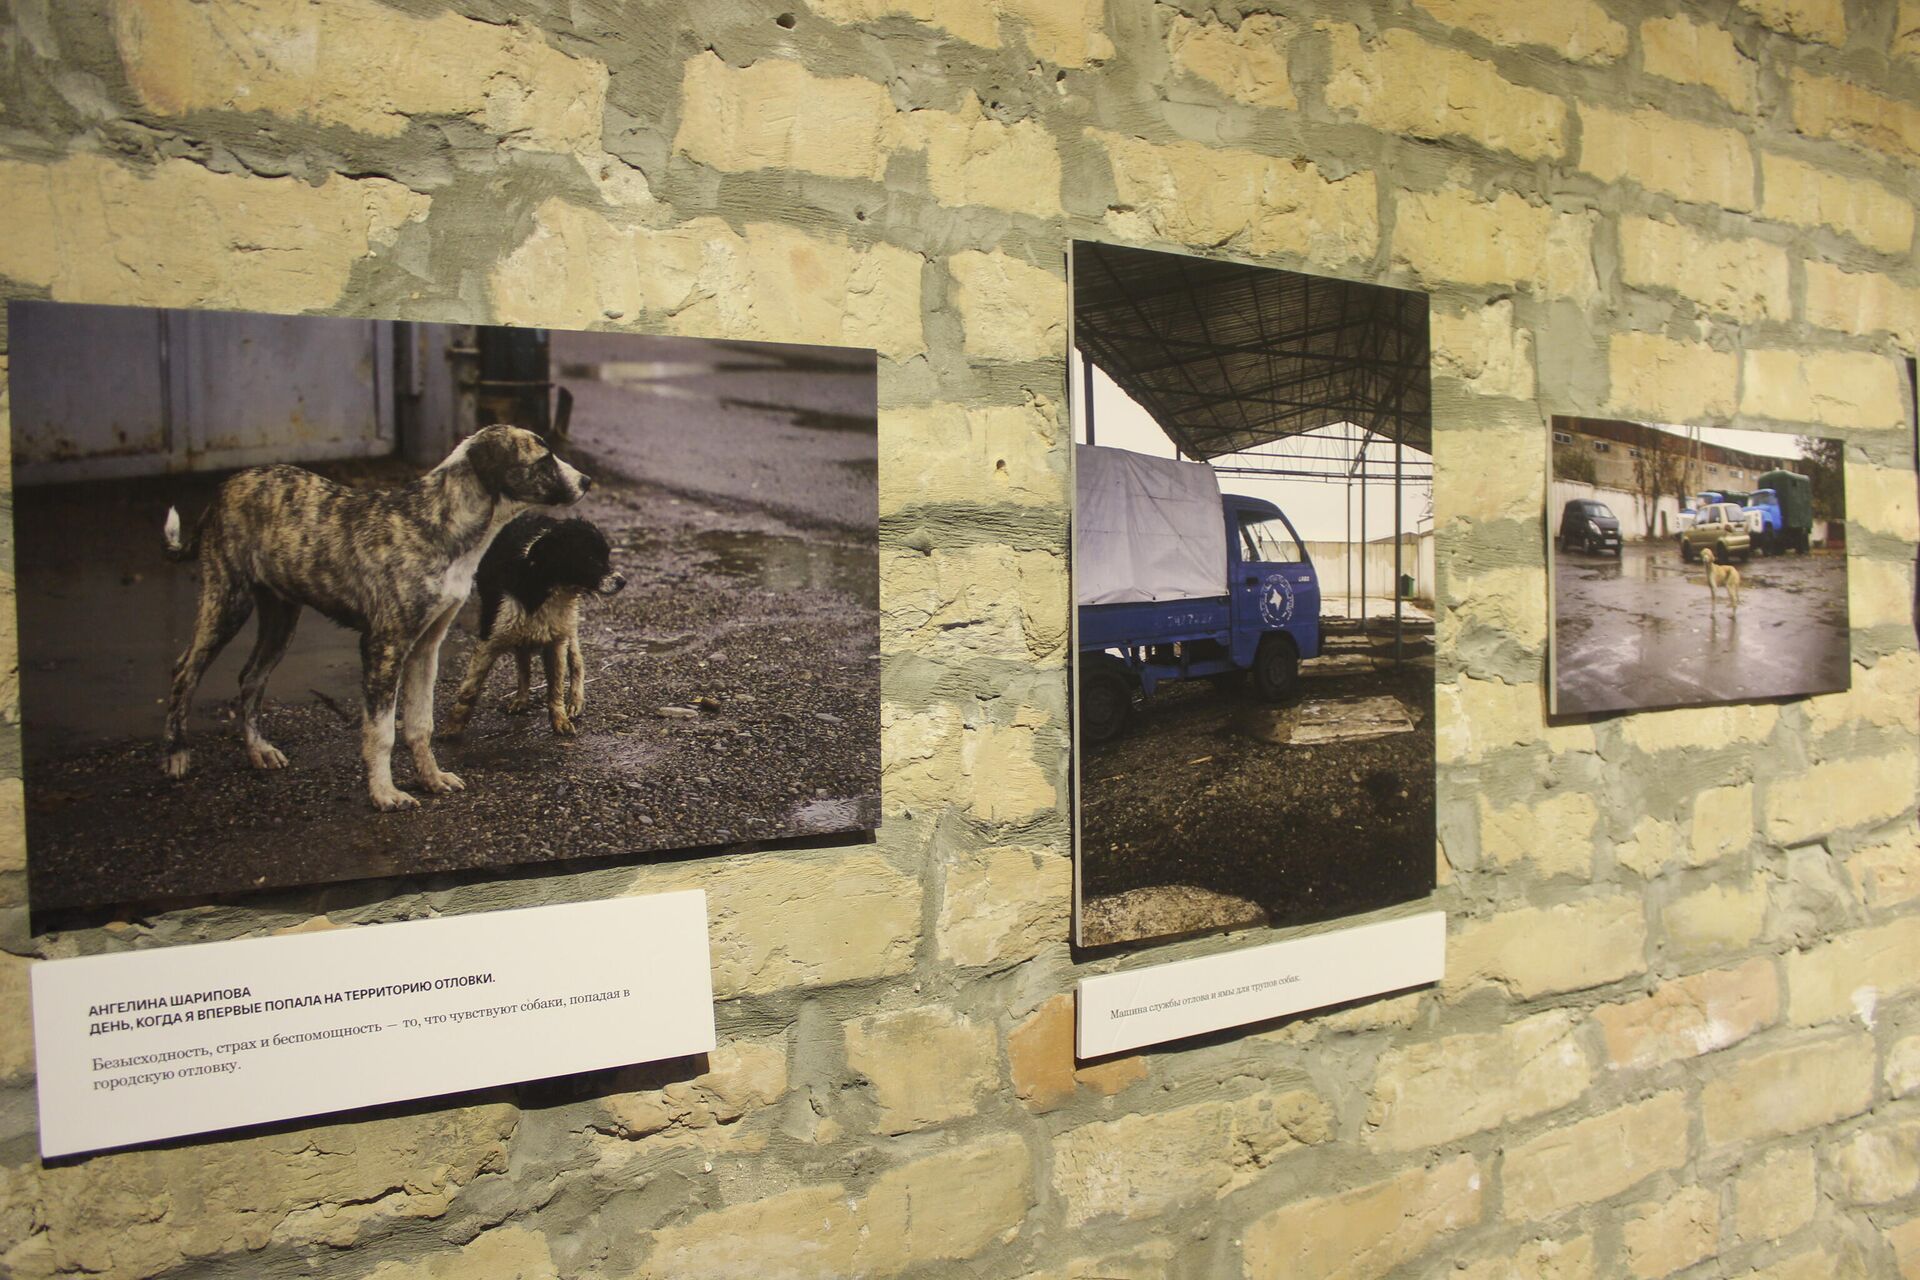 Фотовыставка о тяжелой судьбе бездомных животных в рамках фестиваля СОКО в Ташкенте - Sputnik Узбекистан, 1920, 30.05.2021